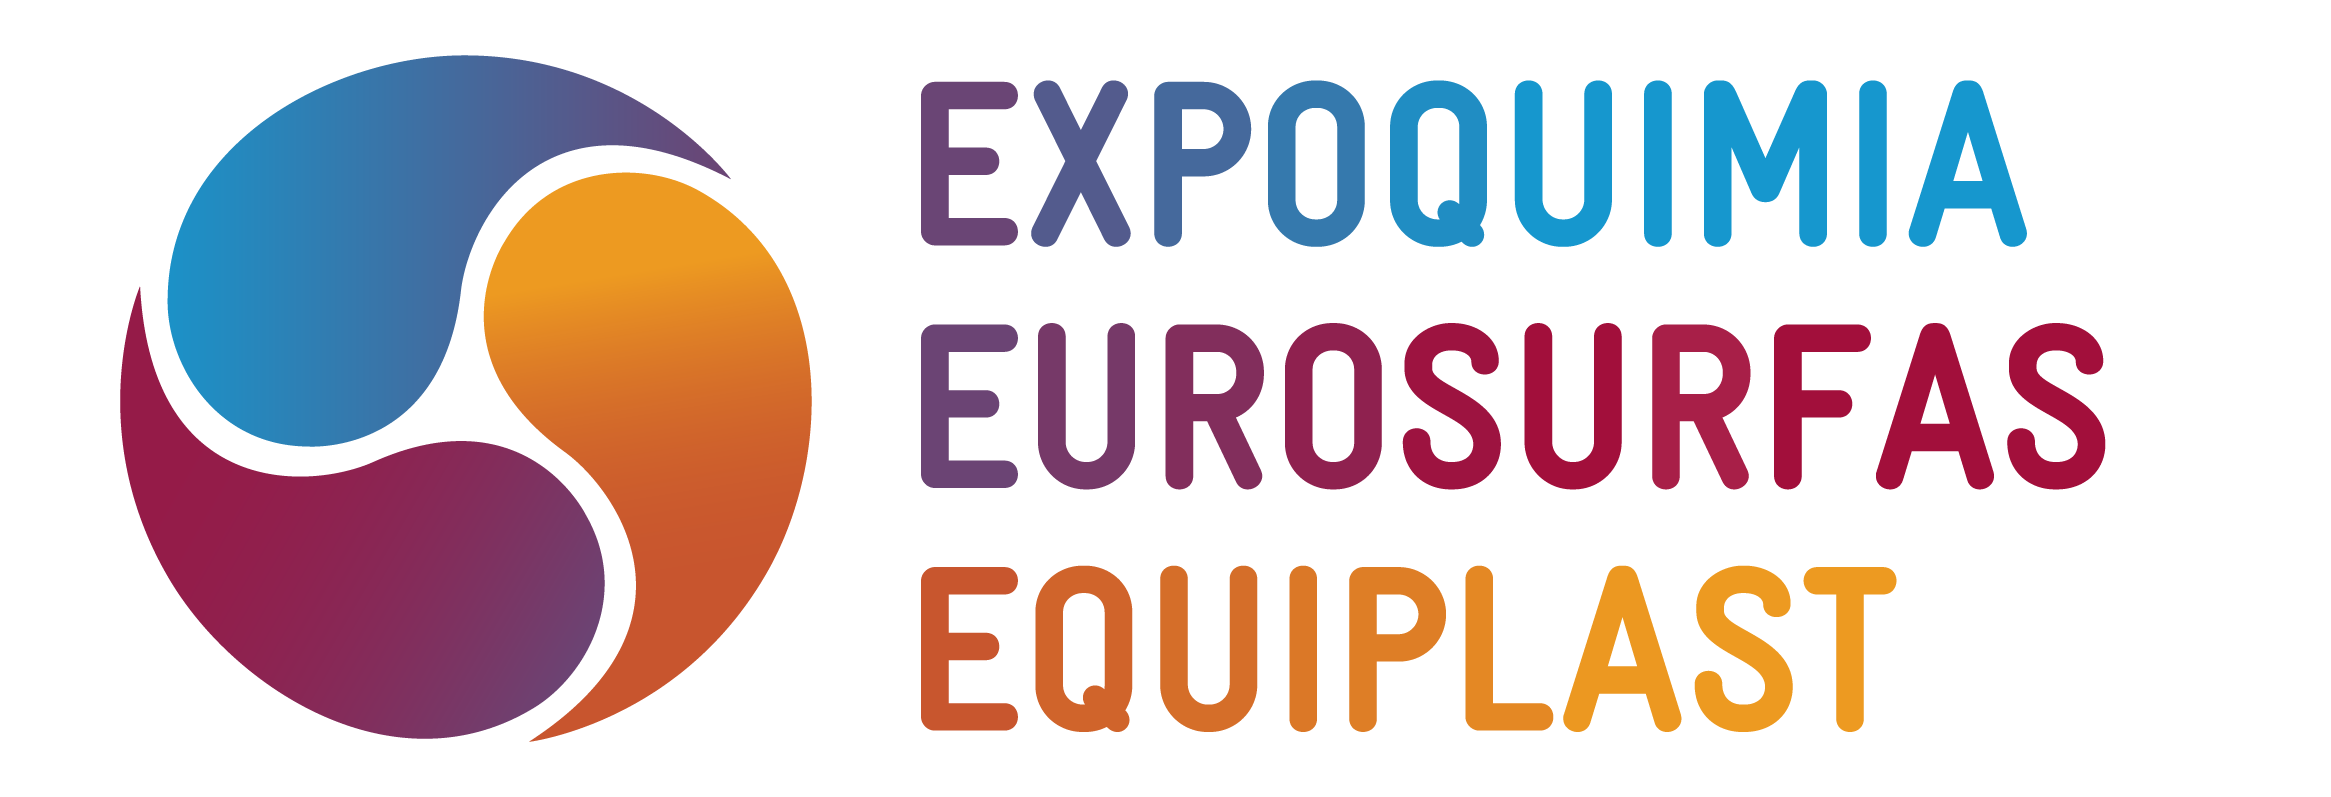 Expoquimia, Eurosurfas & Equiplast